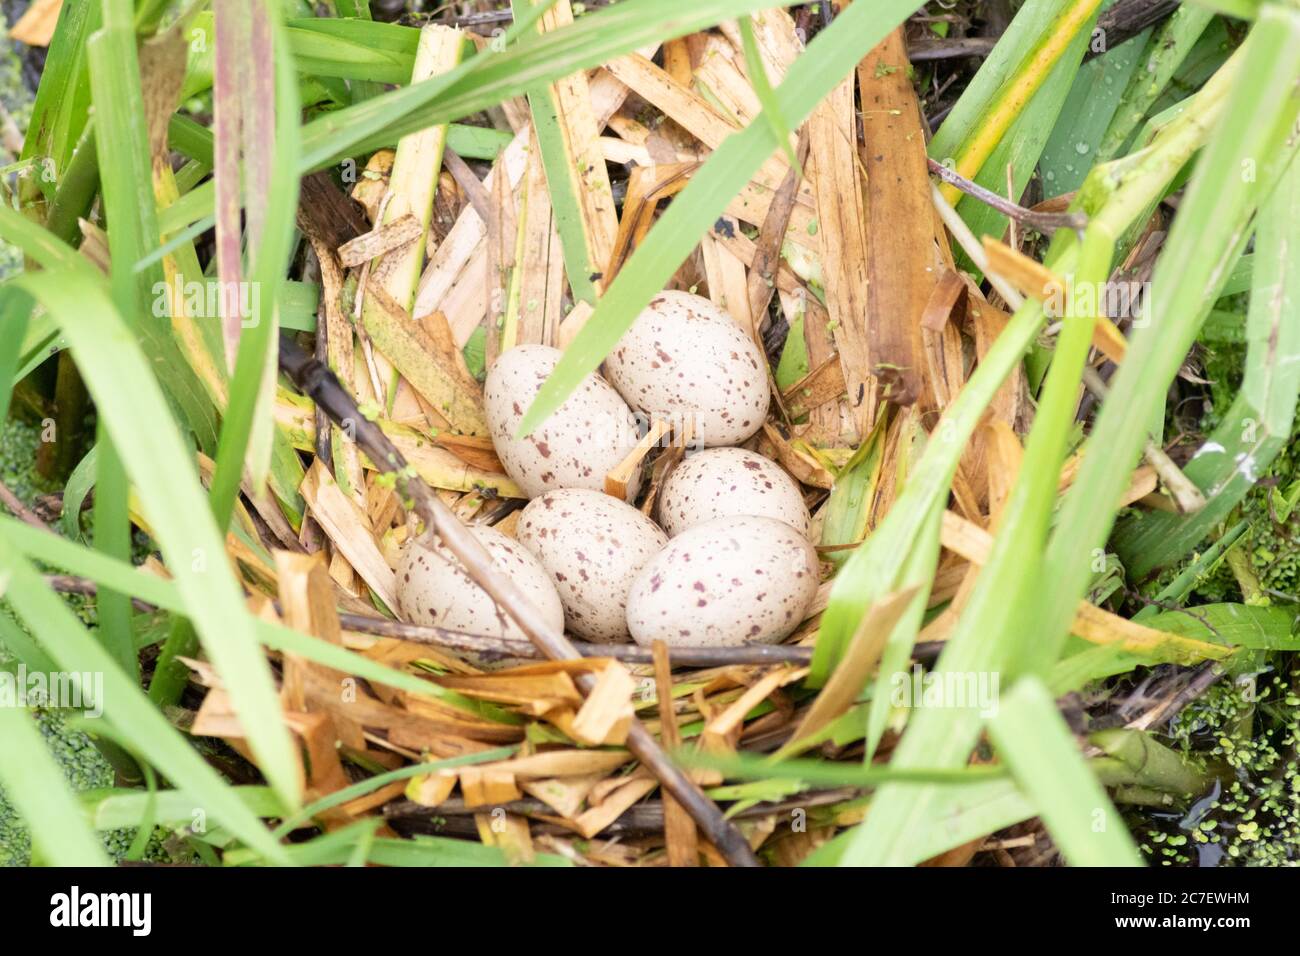 Sechs Eier in einem Moorennest, auch bekannt als Wasserhuhn, gallinula chloropus. Kleiner schwarzer Vogel mit rotem und gelbem Schnabel. Rallidae. Stockfoto